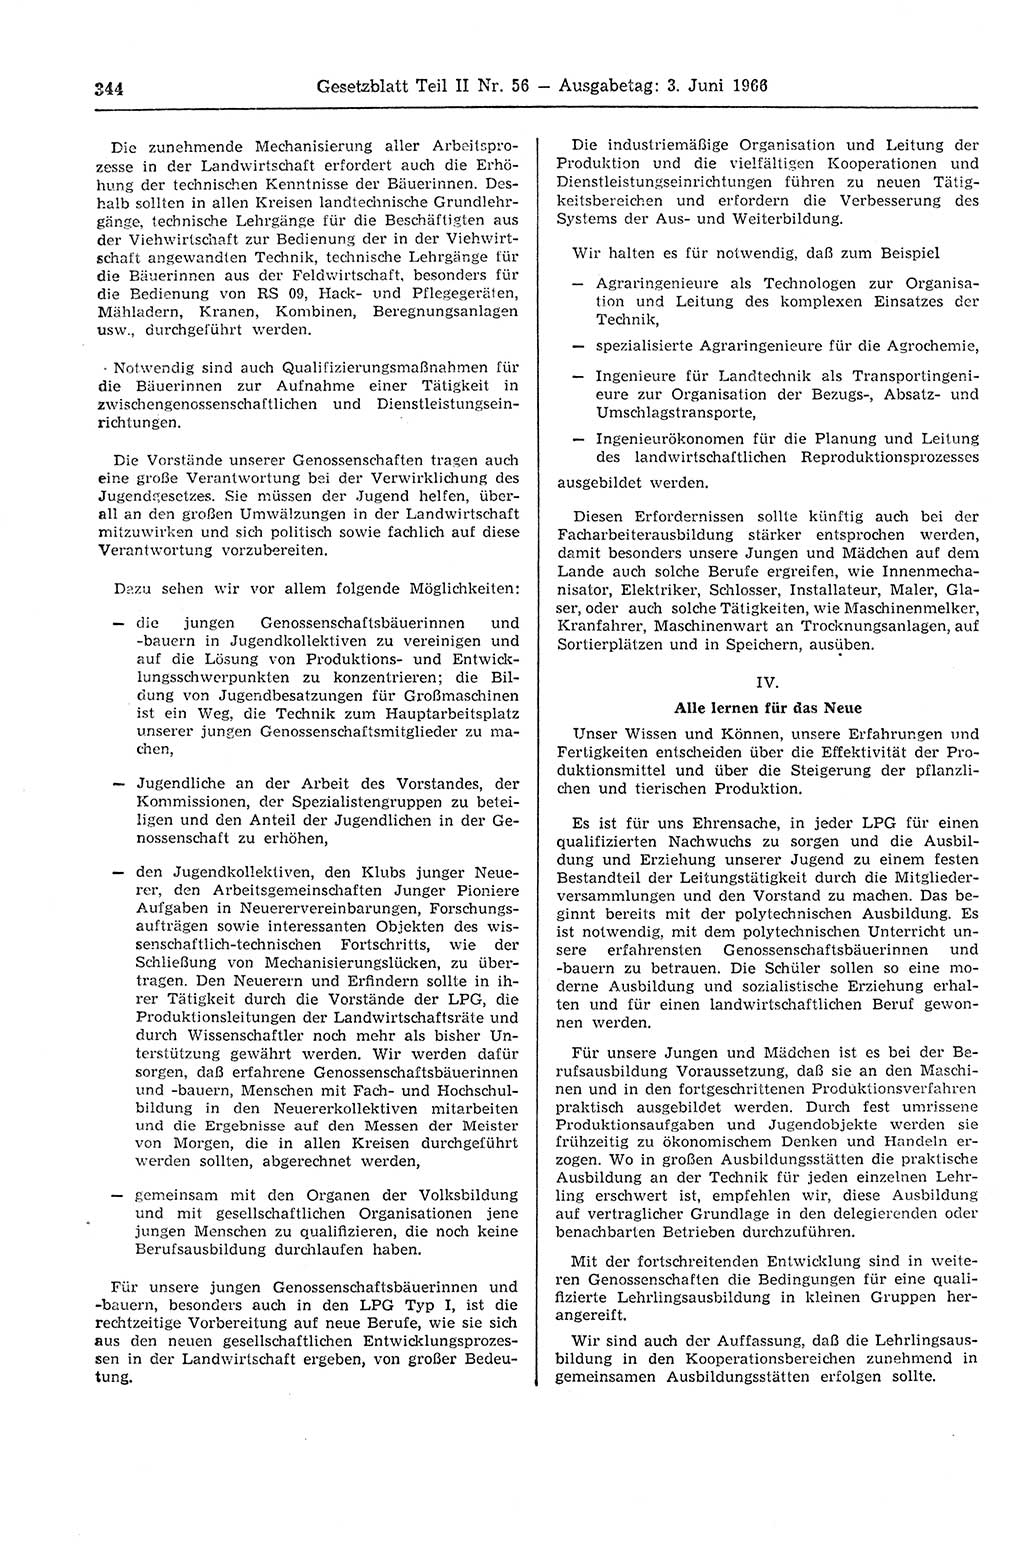 Gesetzblatt (GBl.) der Deutschen Demokratischen Republik (DDR) Teil ⅠⅠ 1966, Seite 344 (GBl. DDR ⅠⅠ 1966, S. 344)